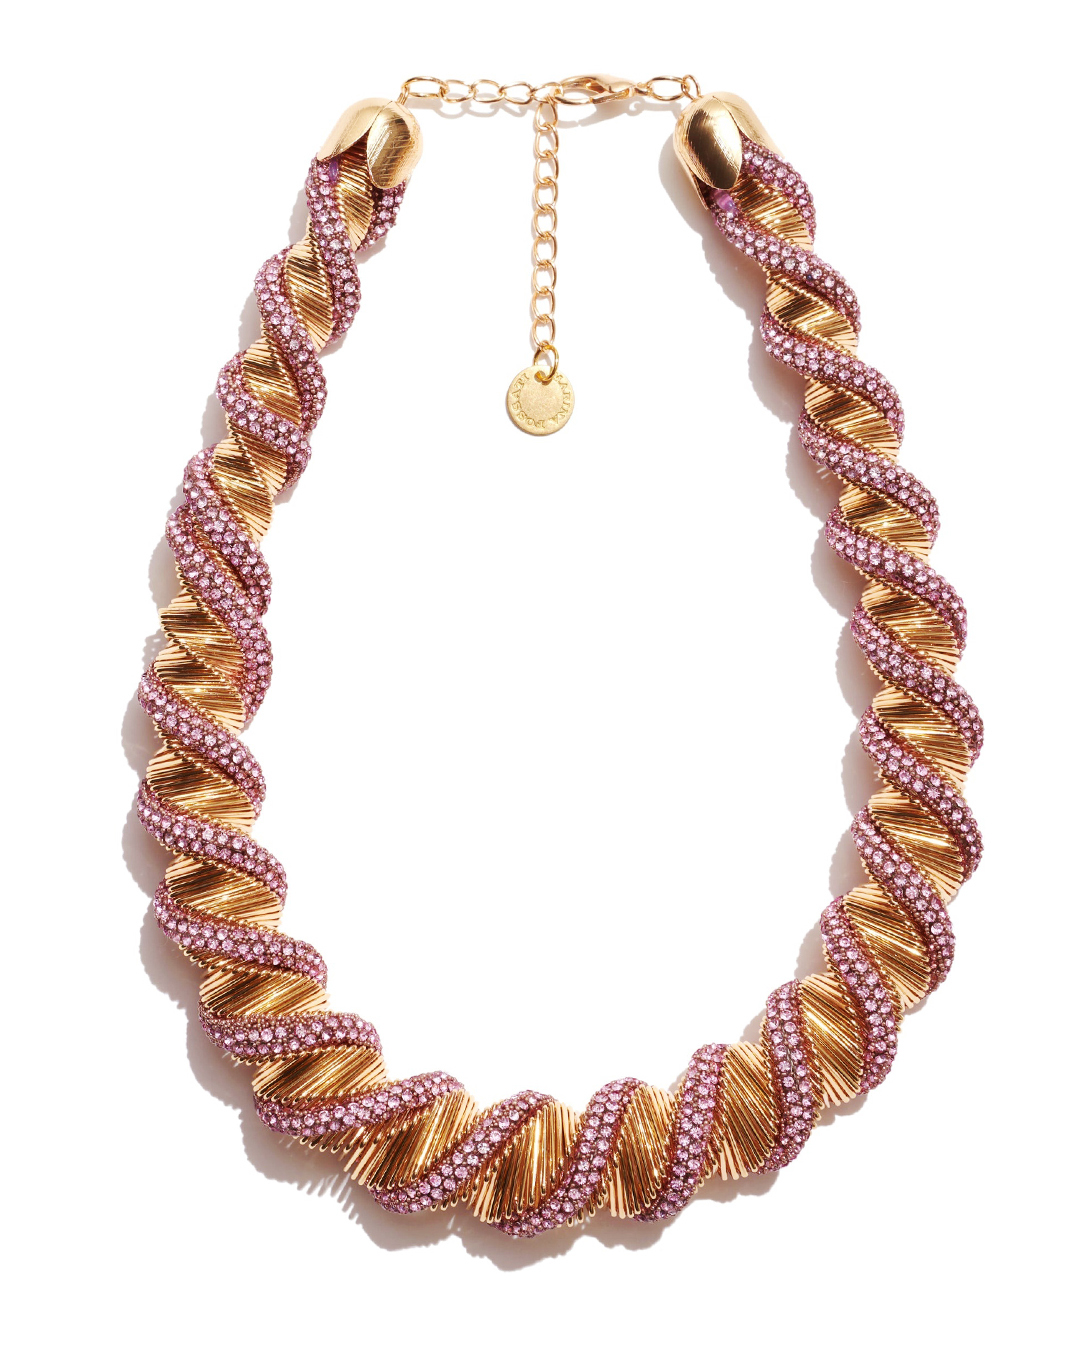 ожерелье Marina Fossati MIUCCIA NECKLACE золотой+розовый UNI, размер UNI, цвет золотой+розовый